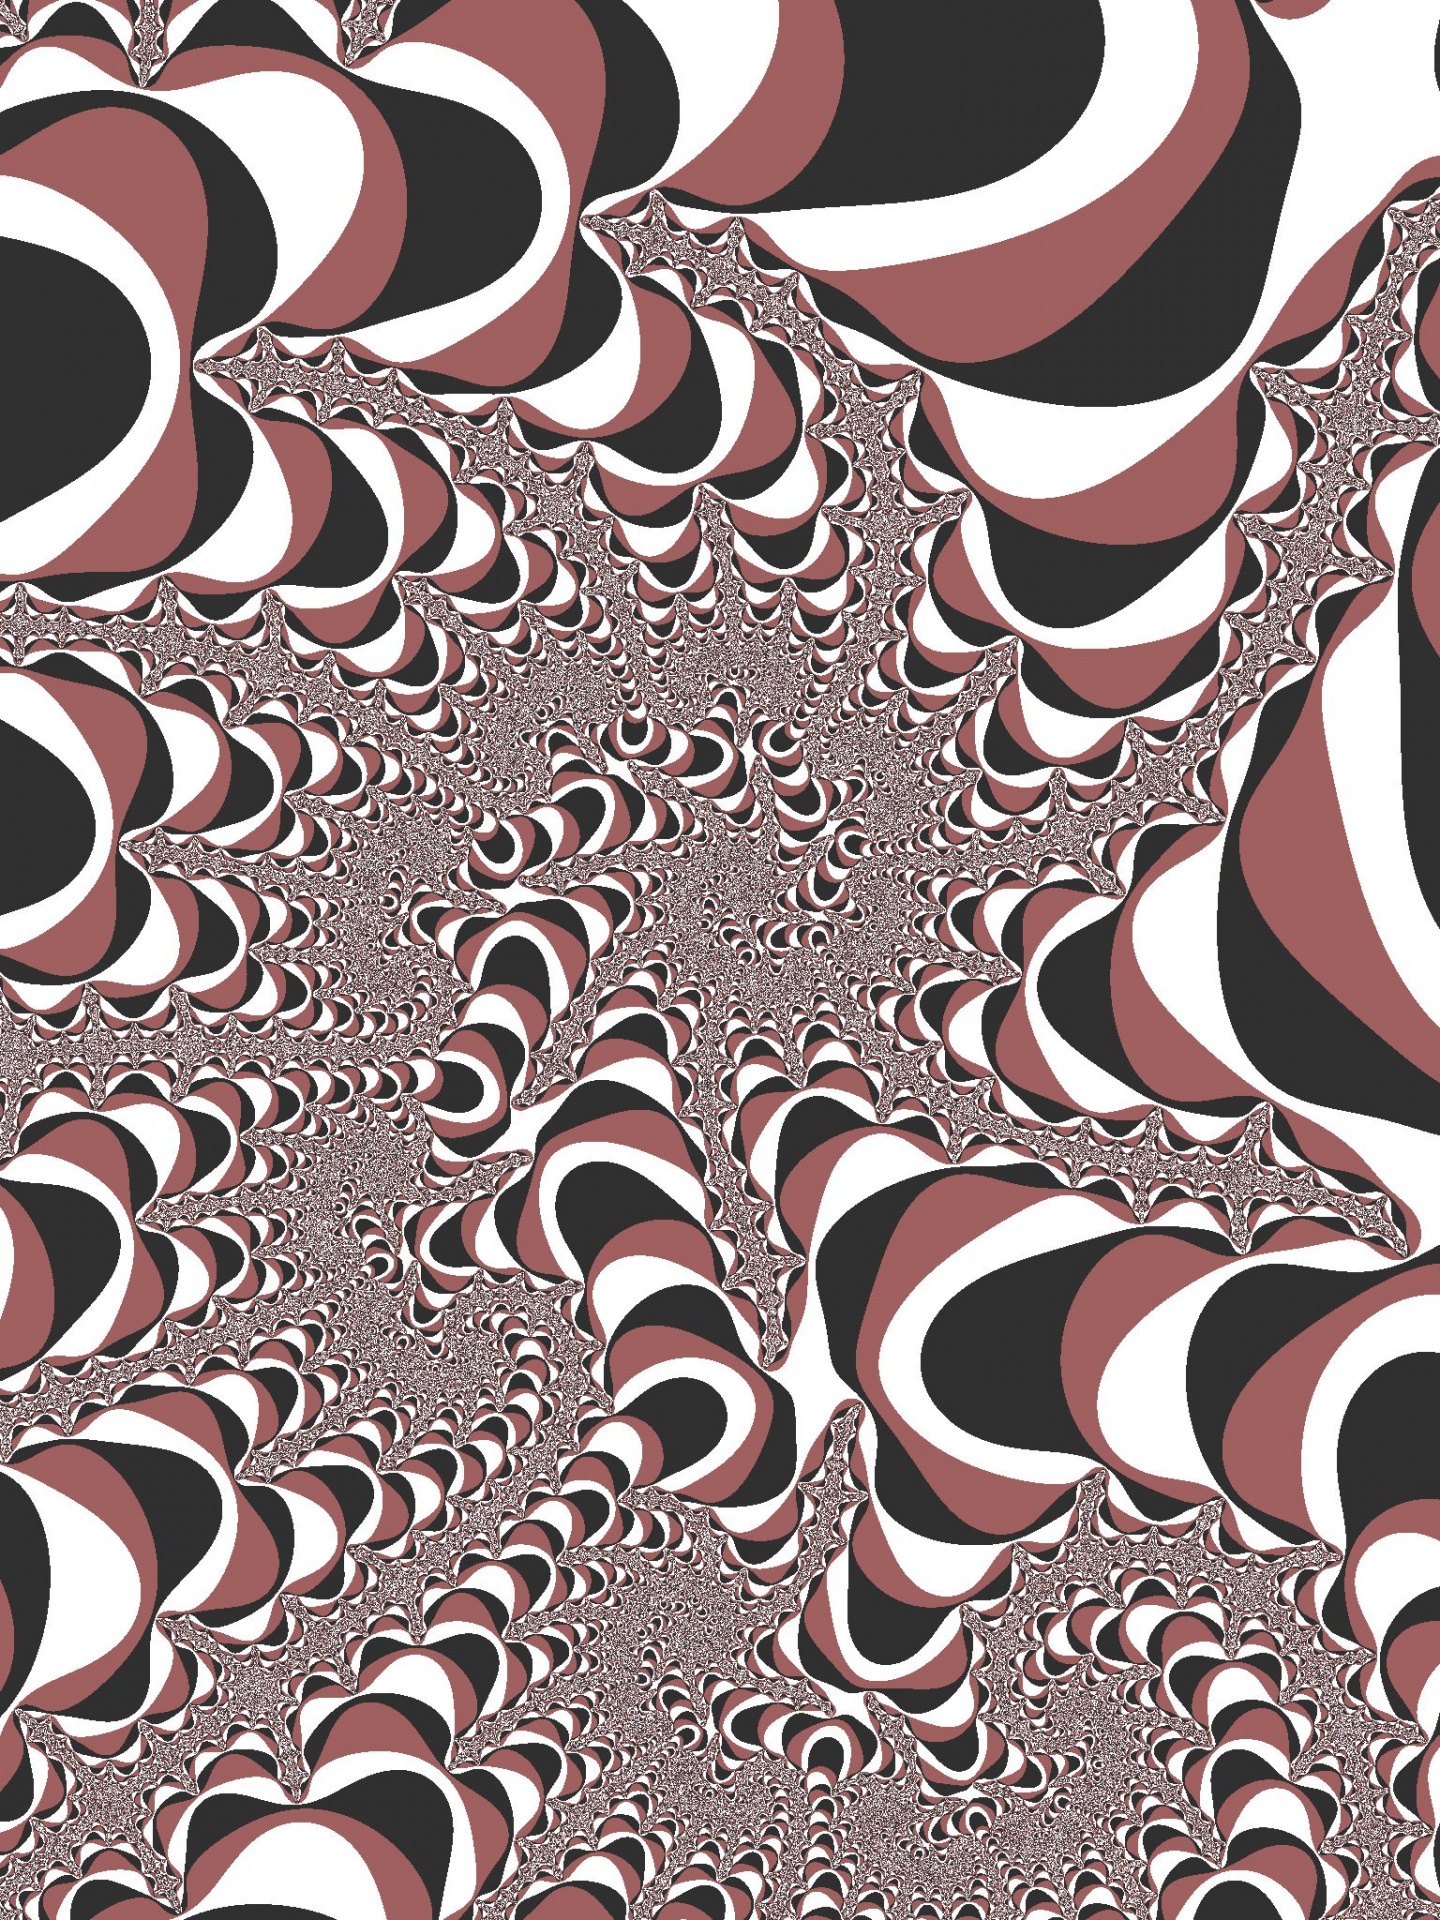 Fractaal patroon in een bruine kleuren